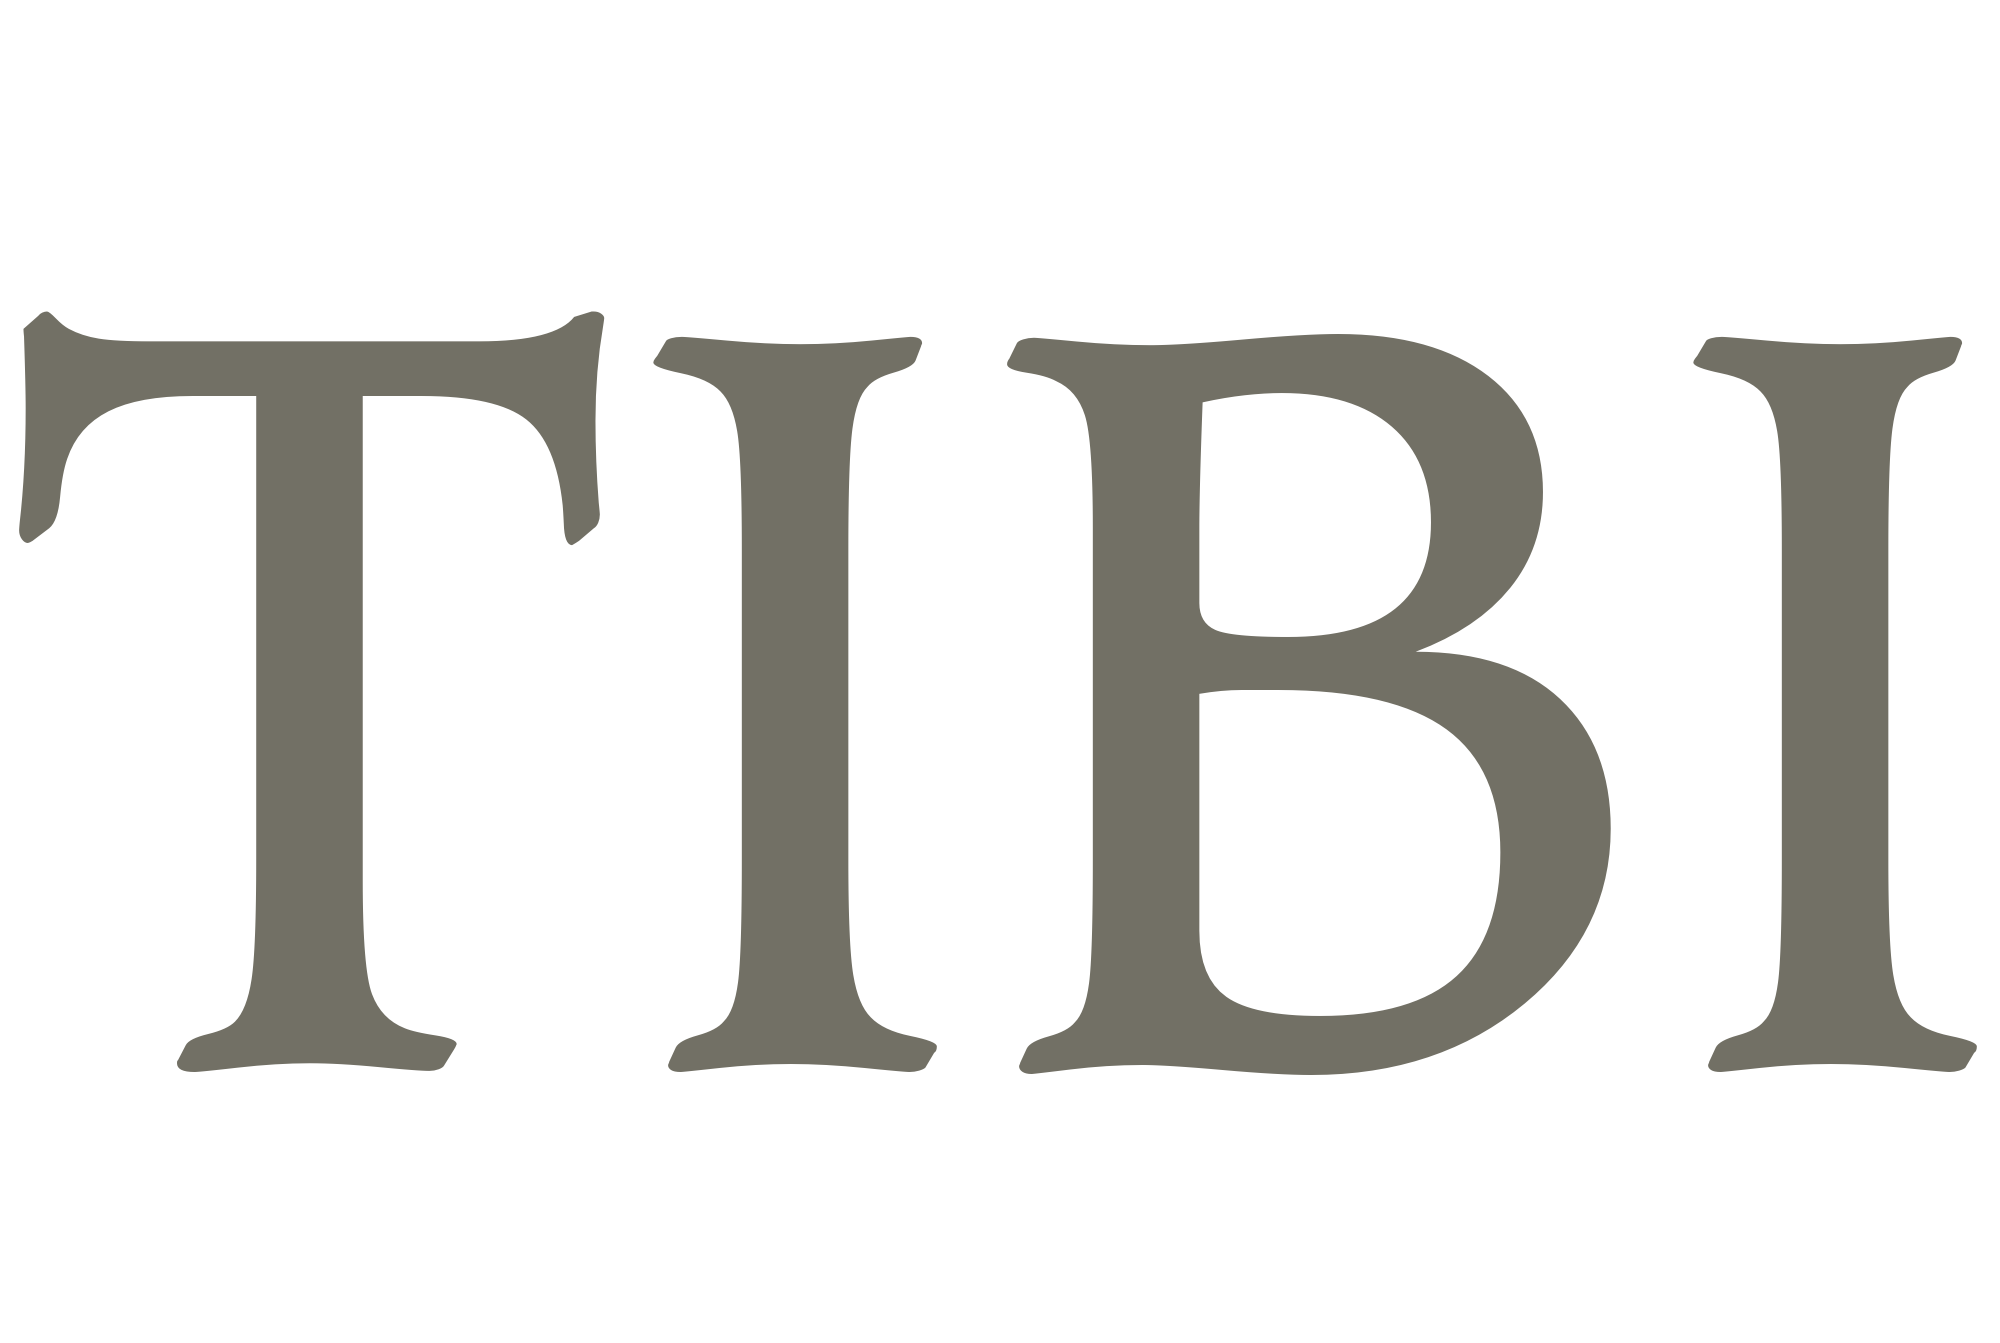 Tibi Logo - Tibi - Name's Meaning of Tibi